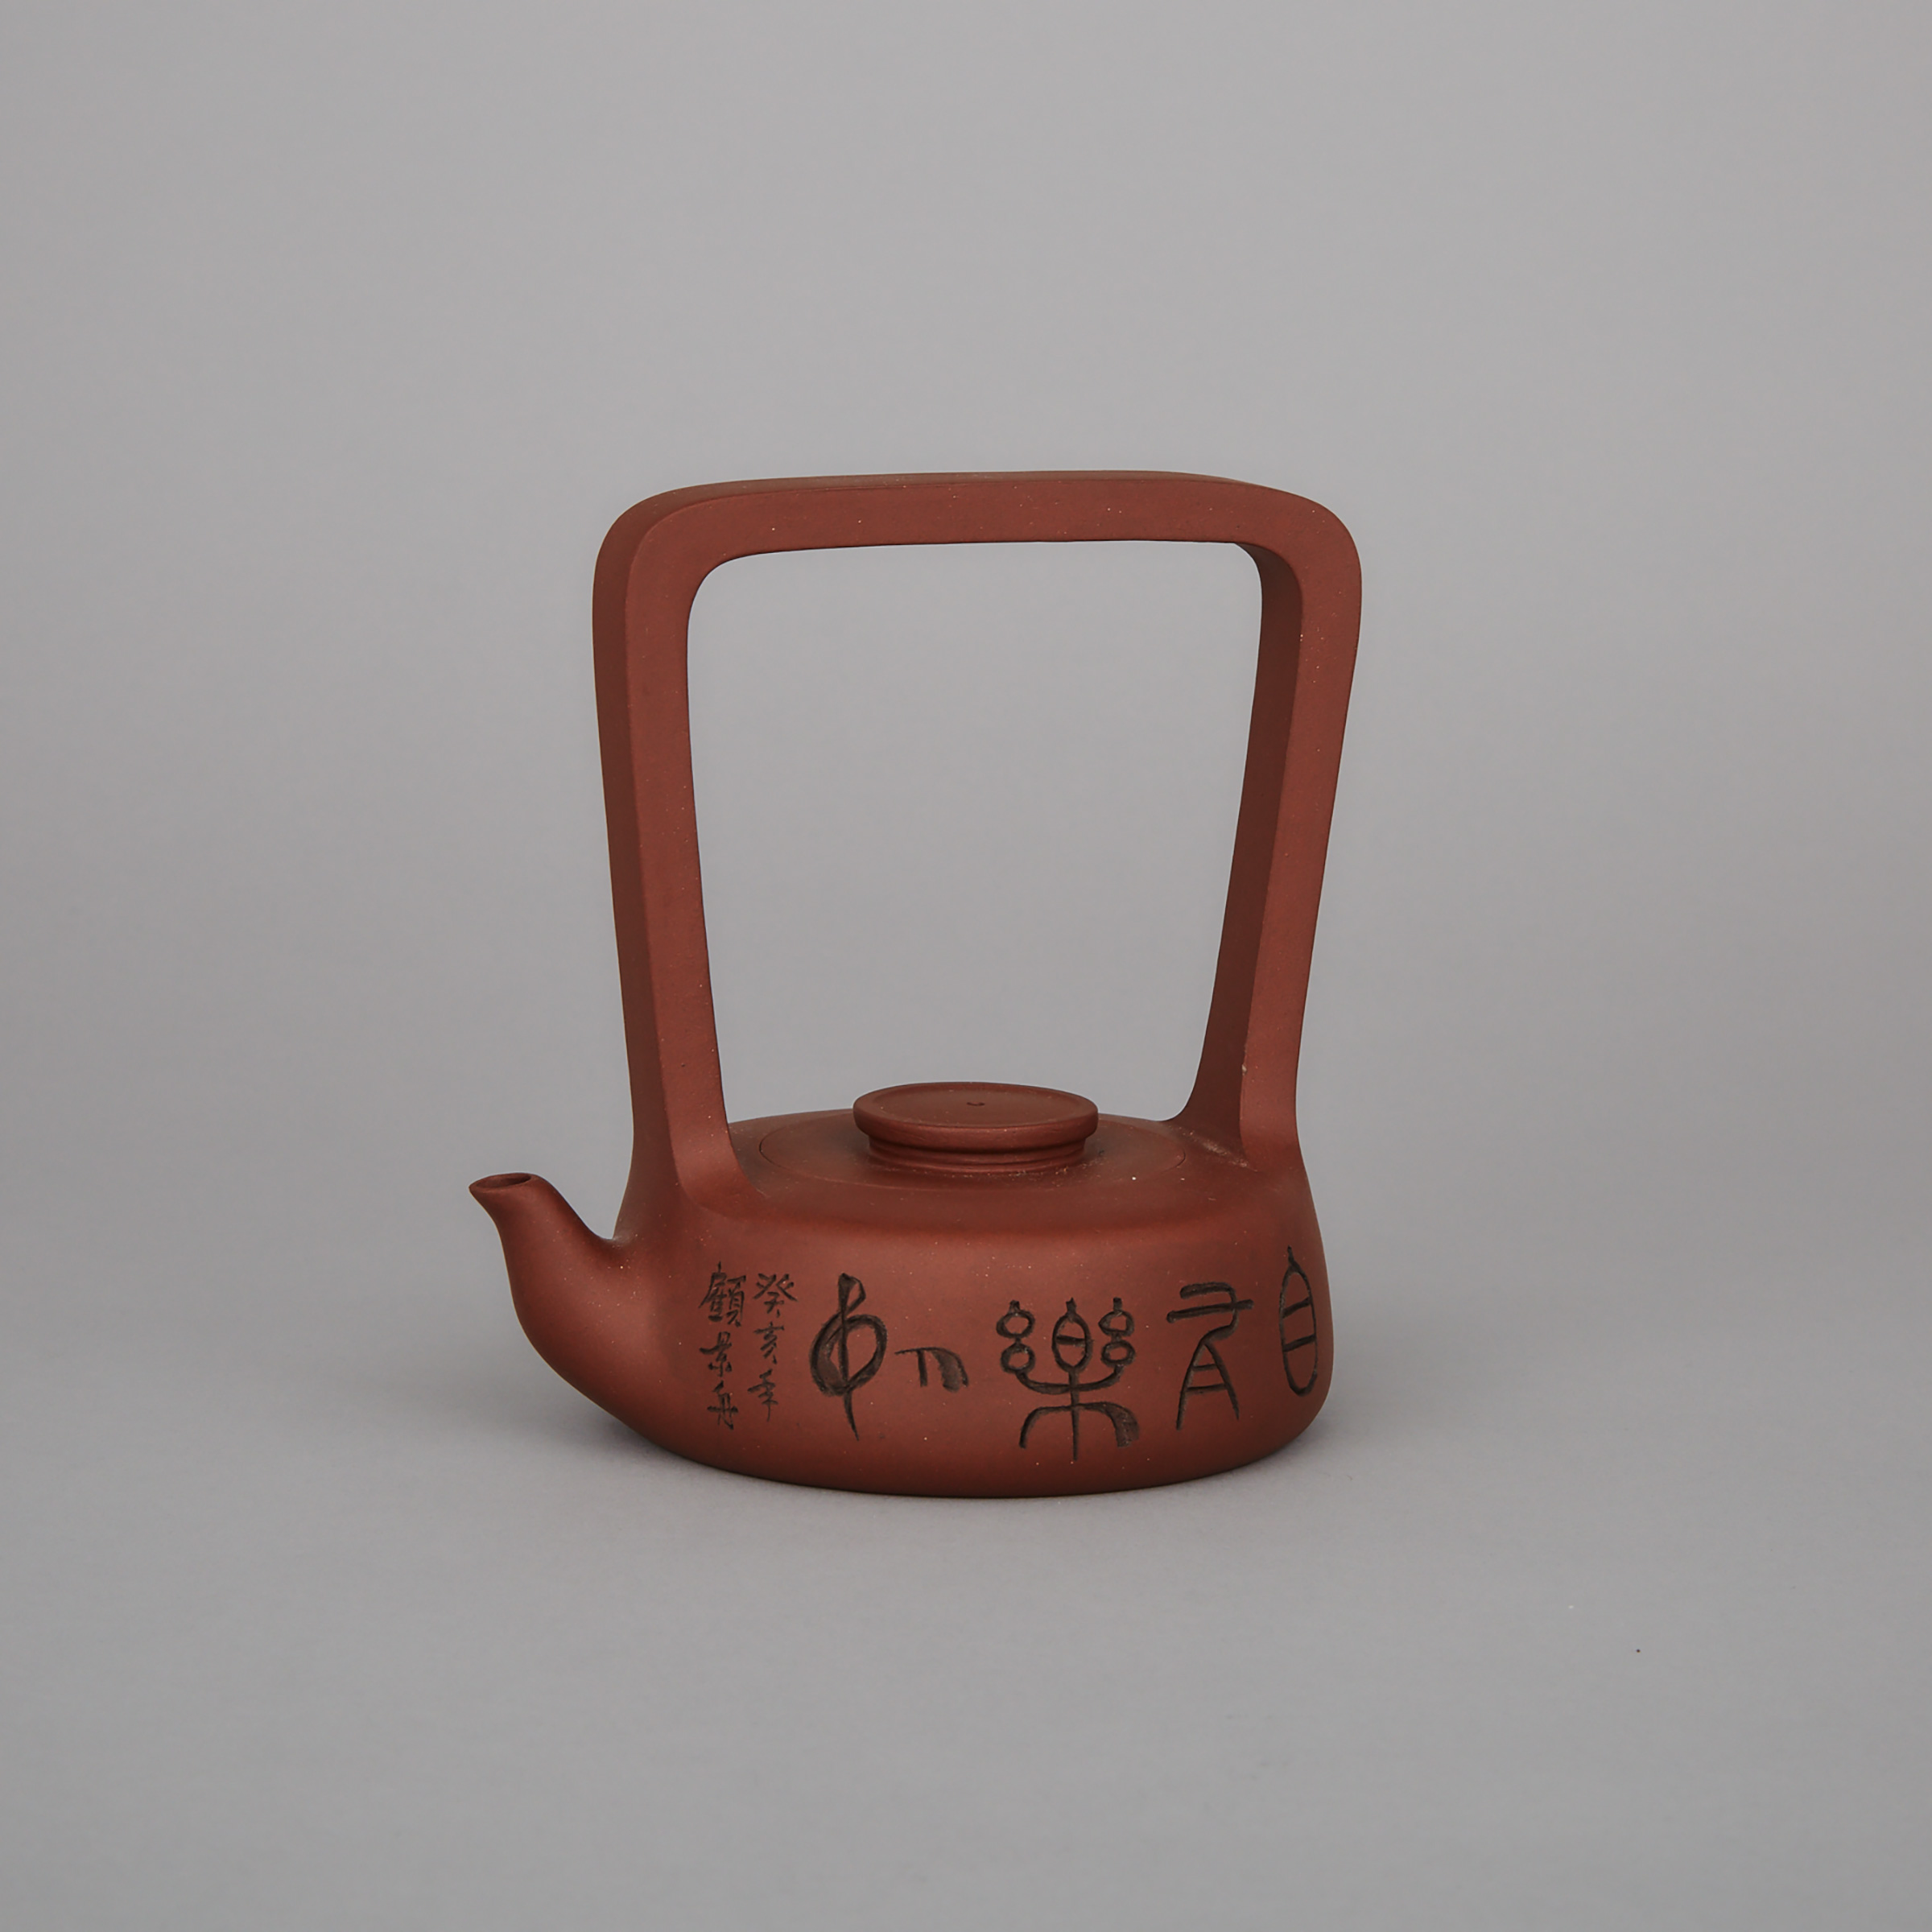 Gu Jingzhou (1915-1996), An Inscribed Yixing Stoneware Teapot and Cover